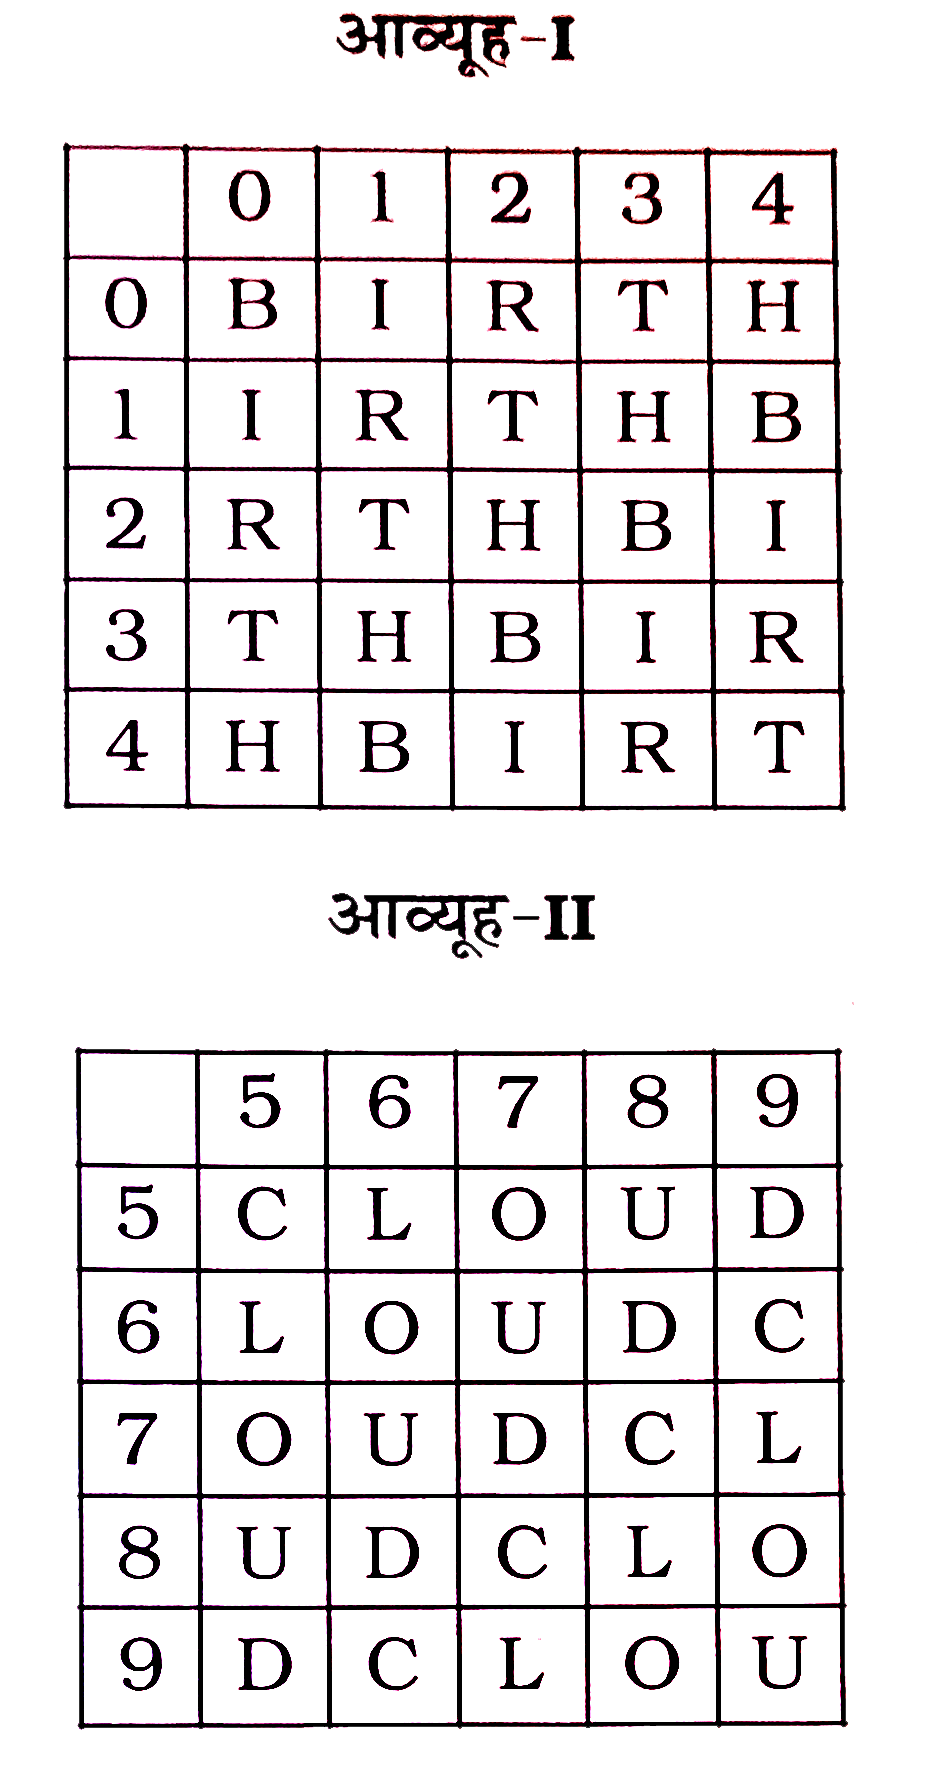 निम्नलिखित  प्रश्न  में  , एक  शब्द  केवल  एक  संख्या  समूह  द्वारा  दर्शाया  गया  है  , जैसा  कि विकल्पों  में से  किसी  एक  में दिया  गया  है । विकल्पों  में से  किसी  एक  में  दिया  गया  है । विकल्पों  में से  दिए  गए  संख्या  - समूह  अक्षरों  के  दो वर्गों  द्वारा  दर्शाए गए  हैं  , जैसा  कि नीचे  दिए  गए  दो  आव्यूहो  में  दिए  गए  हैं  । आव्यूह  -  के  स्तम्भ और  पंक्ति  की  संख्या  0 से  4  में  दी  गई  हैं  और  आव्यूह -II की  5  से  9  में  दी  गई  हैं । इन  आव्यूहो  में एक  अक्षर  को पहले  उसकी  पंक्ति  और  बाद  में  स्तंभ  संख्या  द्वारा  दर्शाया  गया  है ,  उदाहरण  के  लिए  'C'  को  59 , 68  इत्यादि  द्वारा  प्रदर्शित  किया  जा  सकता  हैं   CHILD  शब्द  के  लिए  सेट  की पहचान  करें।